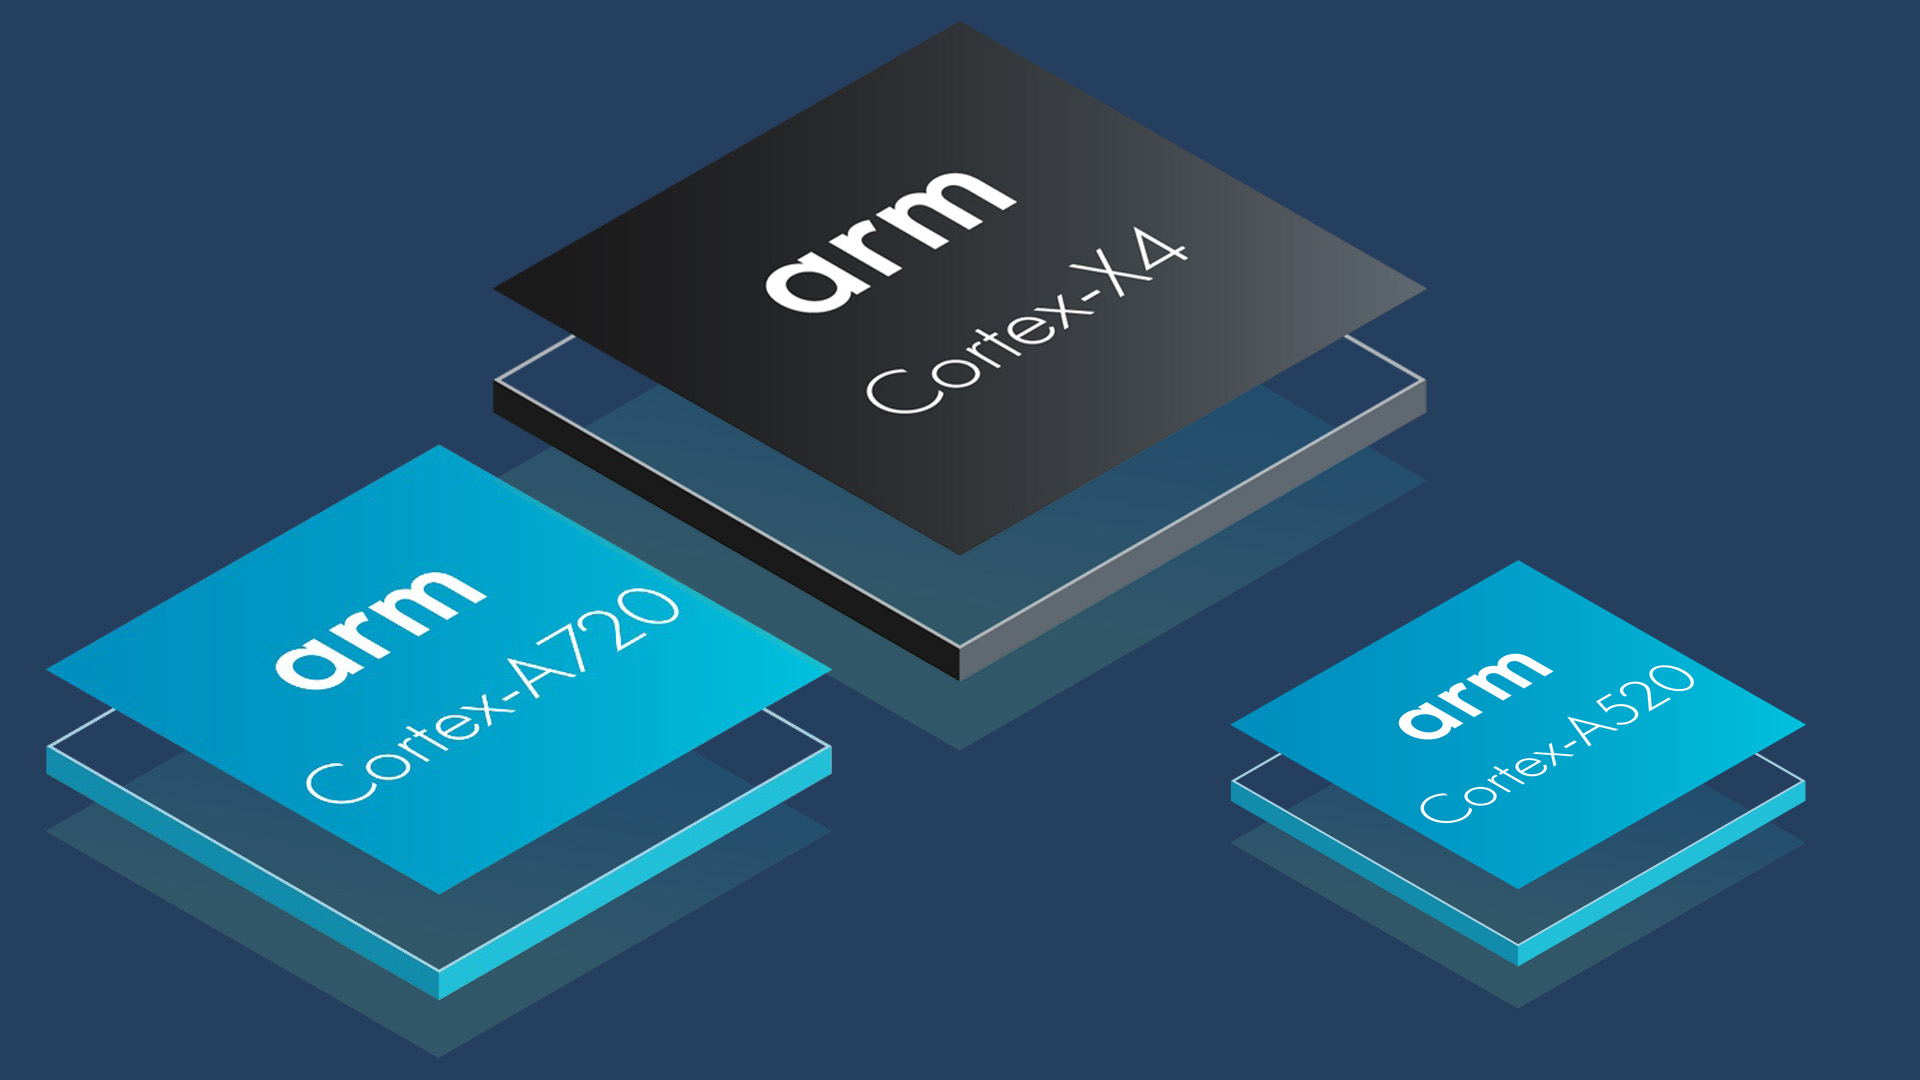 Arm Cortex X4 A720 A520 CPU logos